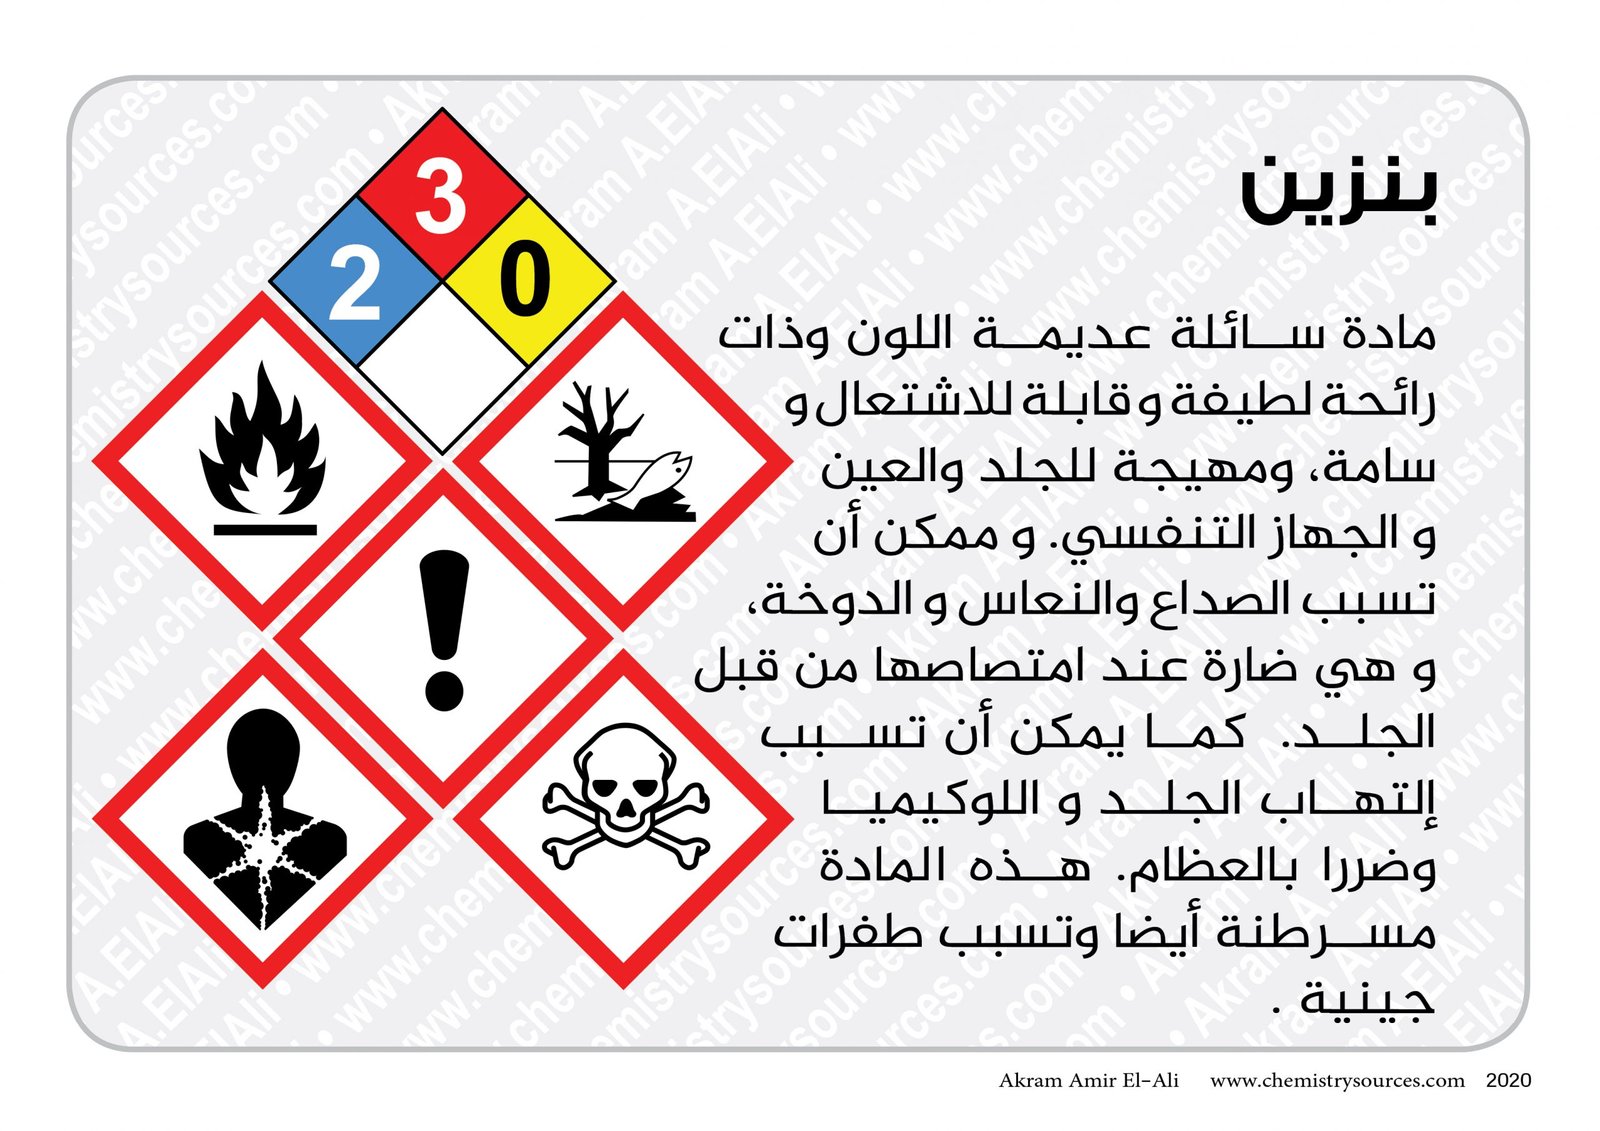 اخطار المواد الكيميائية المختصرة7 scaled